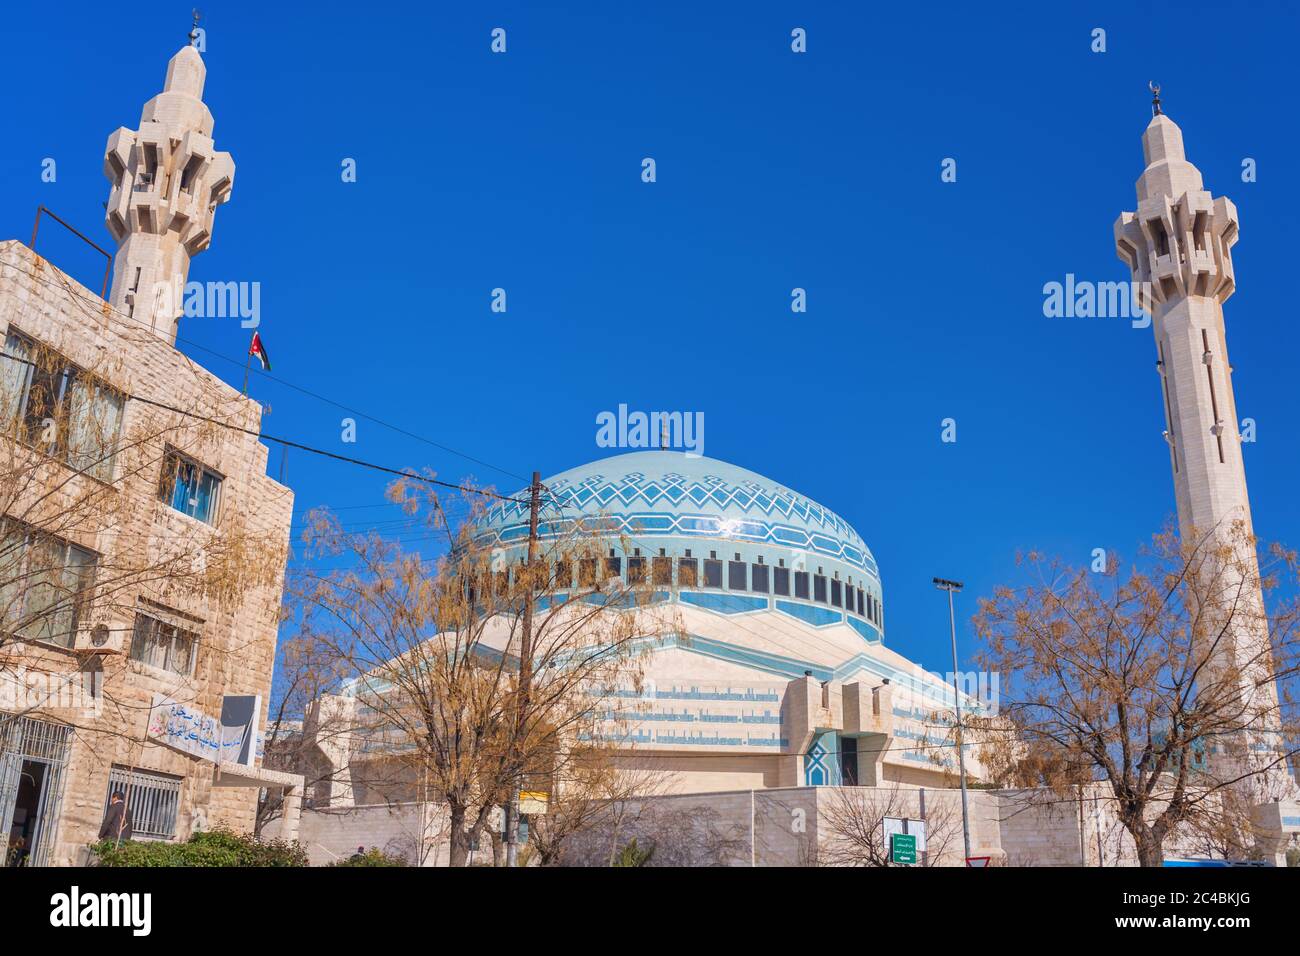 Mosquée du roi Abdalah I, 1989, Amman, Jordanie Banque D'Images